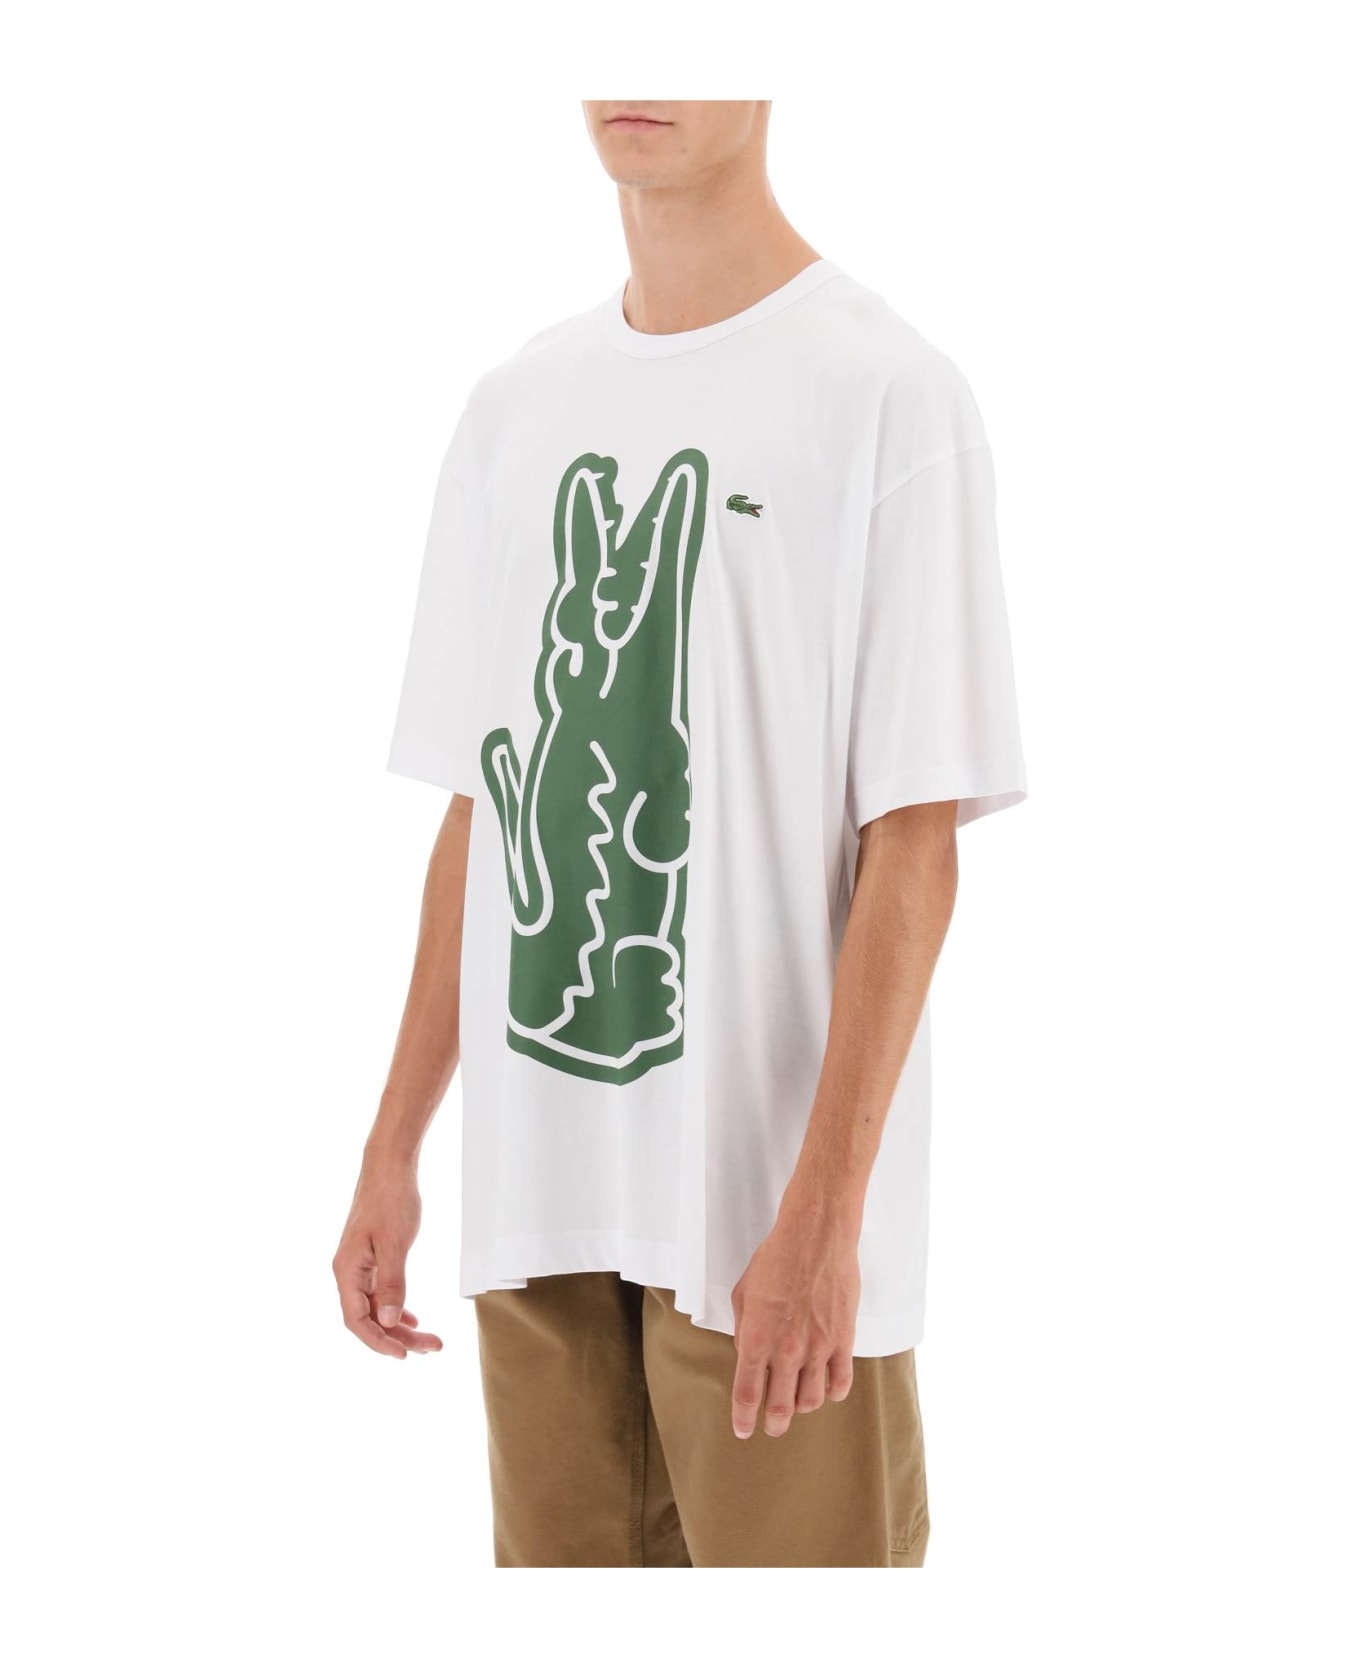 Comme des Garçons Shirt Boy X Lacoste Crocodile Print T-shirt - White シャツ